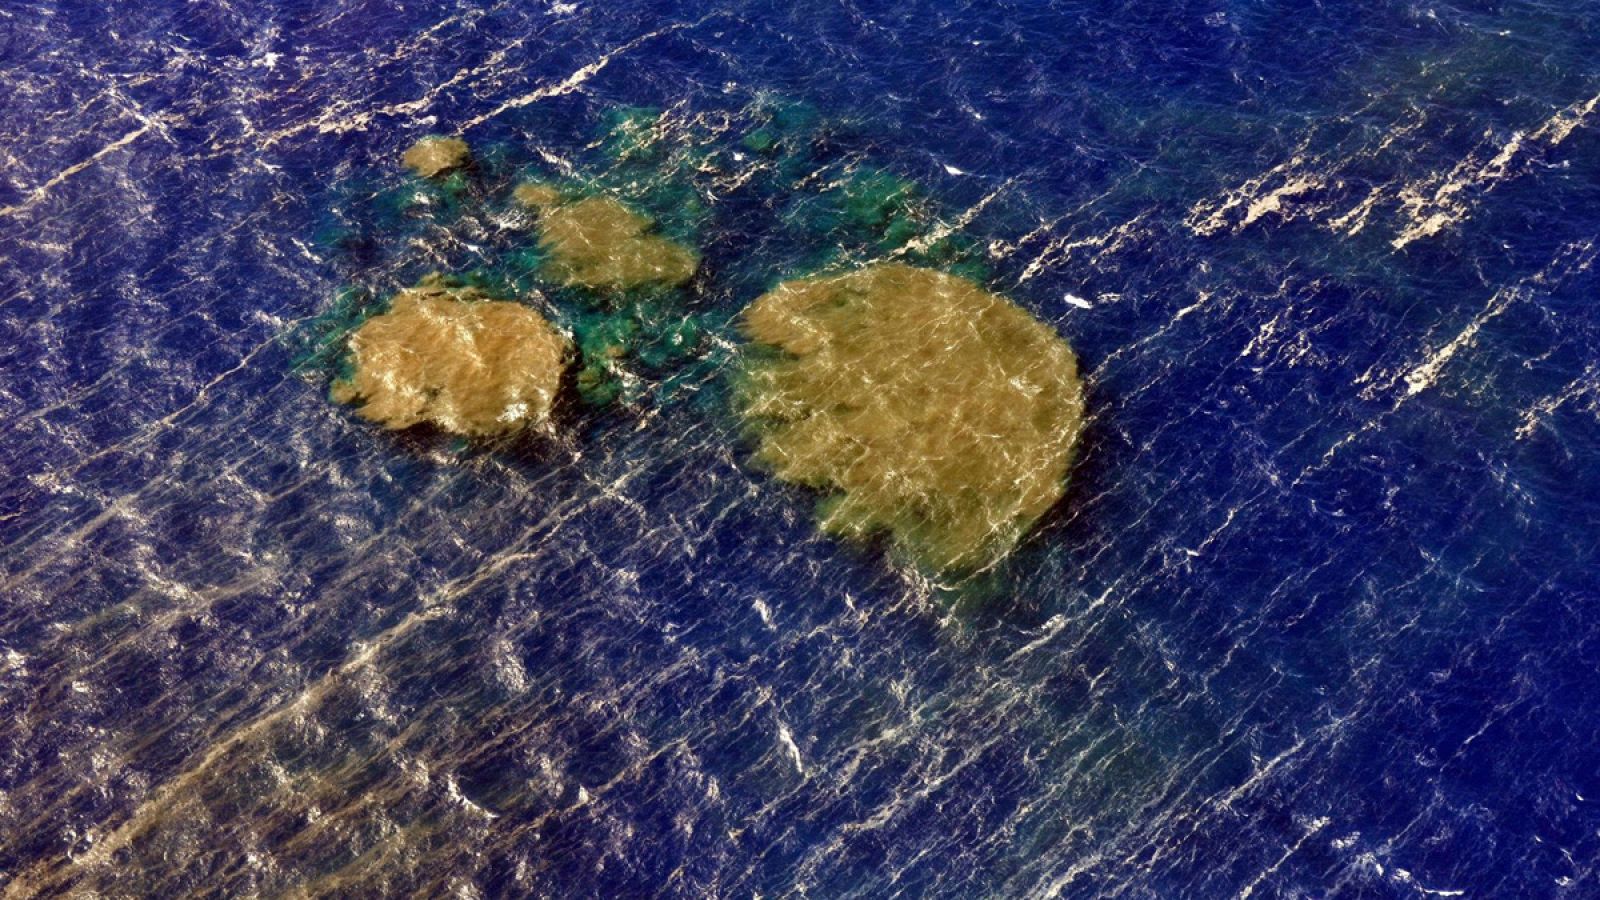 Fotografía de archivo facilitada por la guadia Civil del aspecto que muestra las manchas en el mar producto de los materiales expulsados tras la erupción submarina de la isla de El Hierro